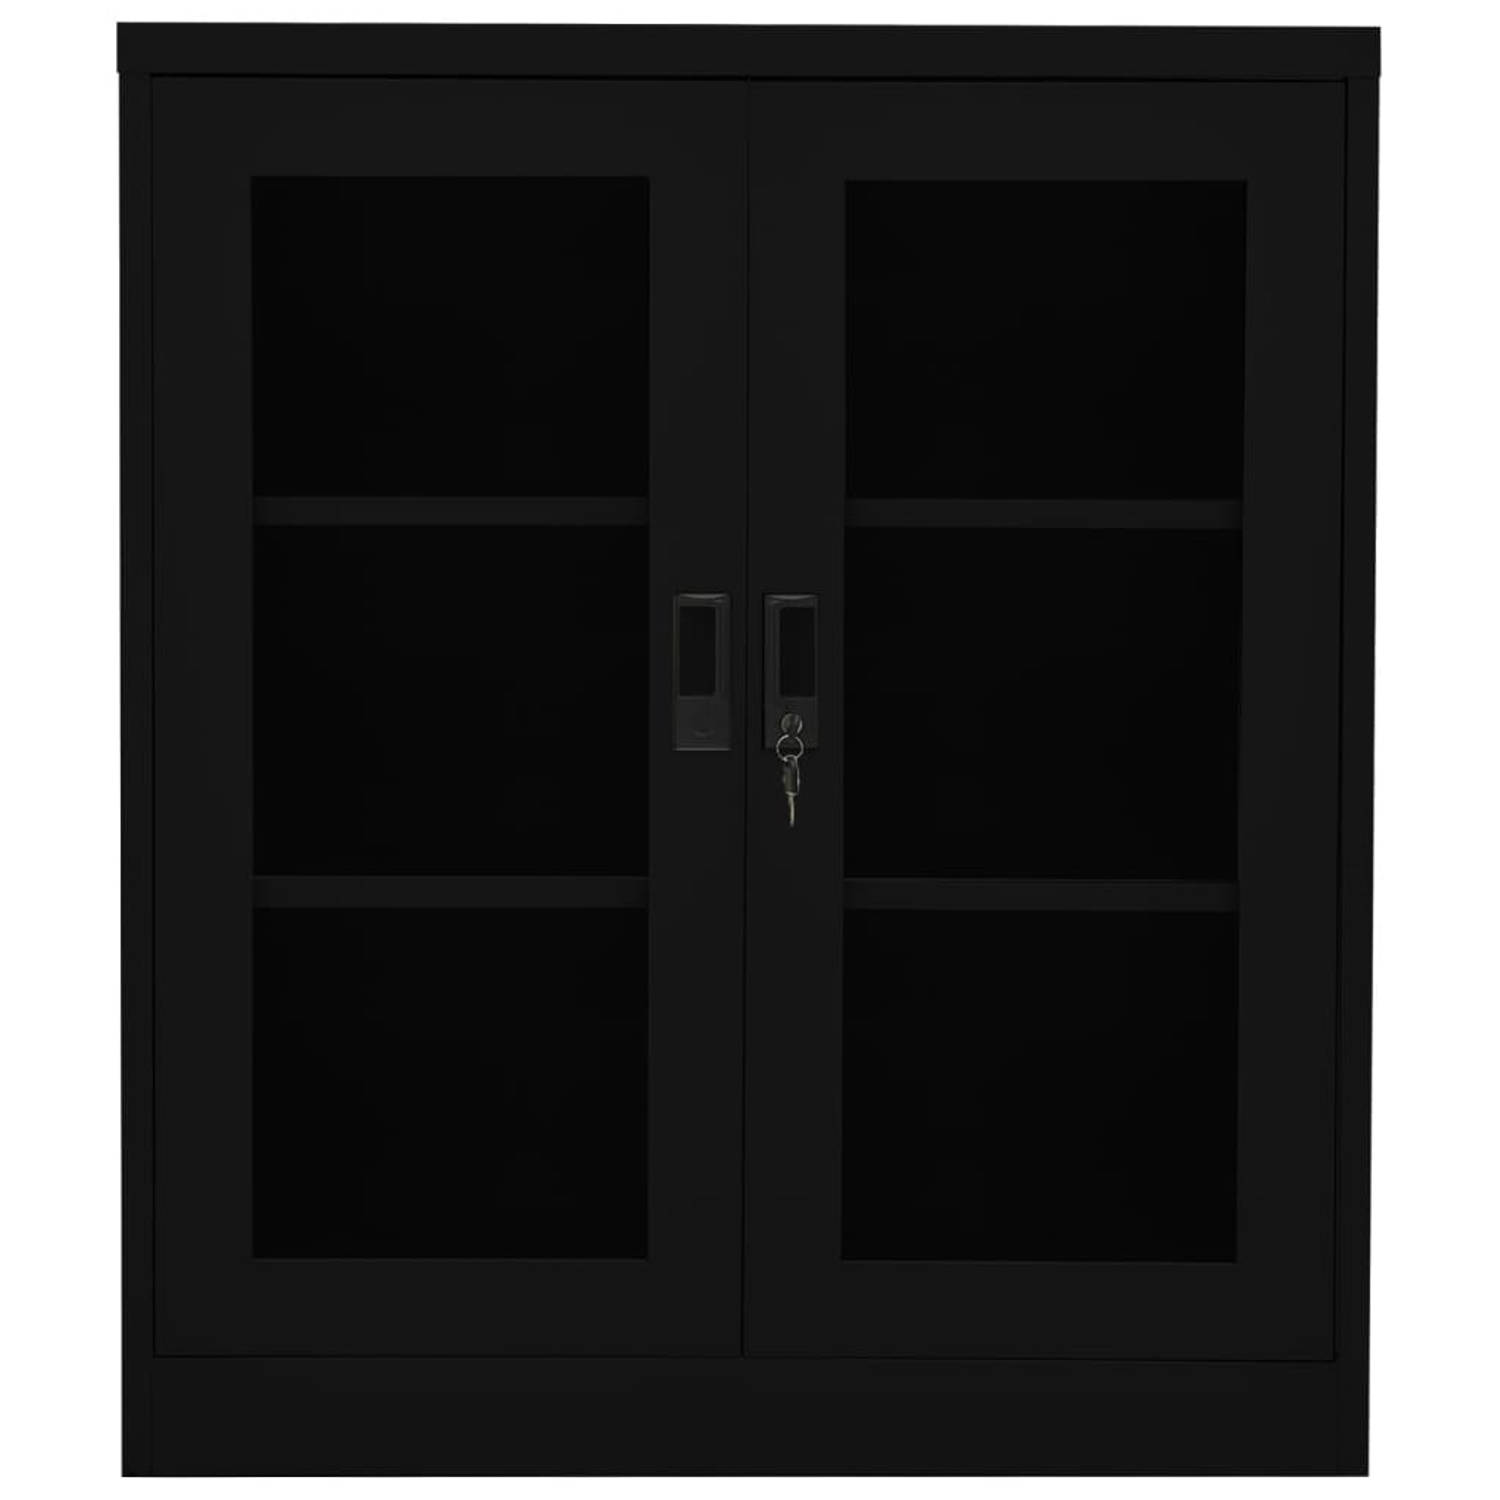 The Living Store Archiefkast - 90 x 40 x 105 cm - Staal - Gehard glas - Zwart - Met 2 deuren en verstelbare schappen